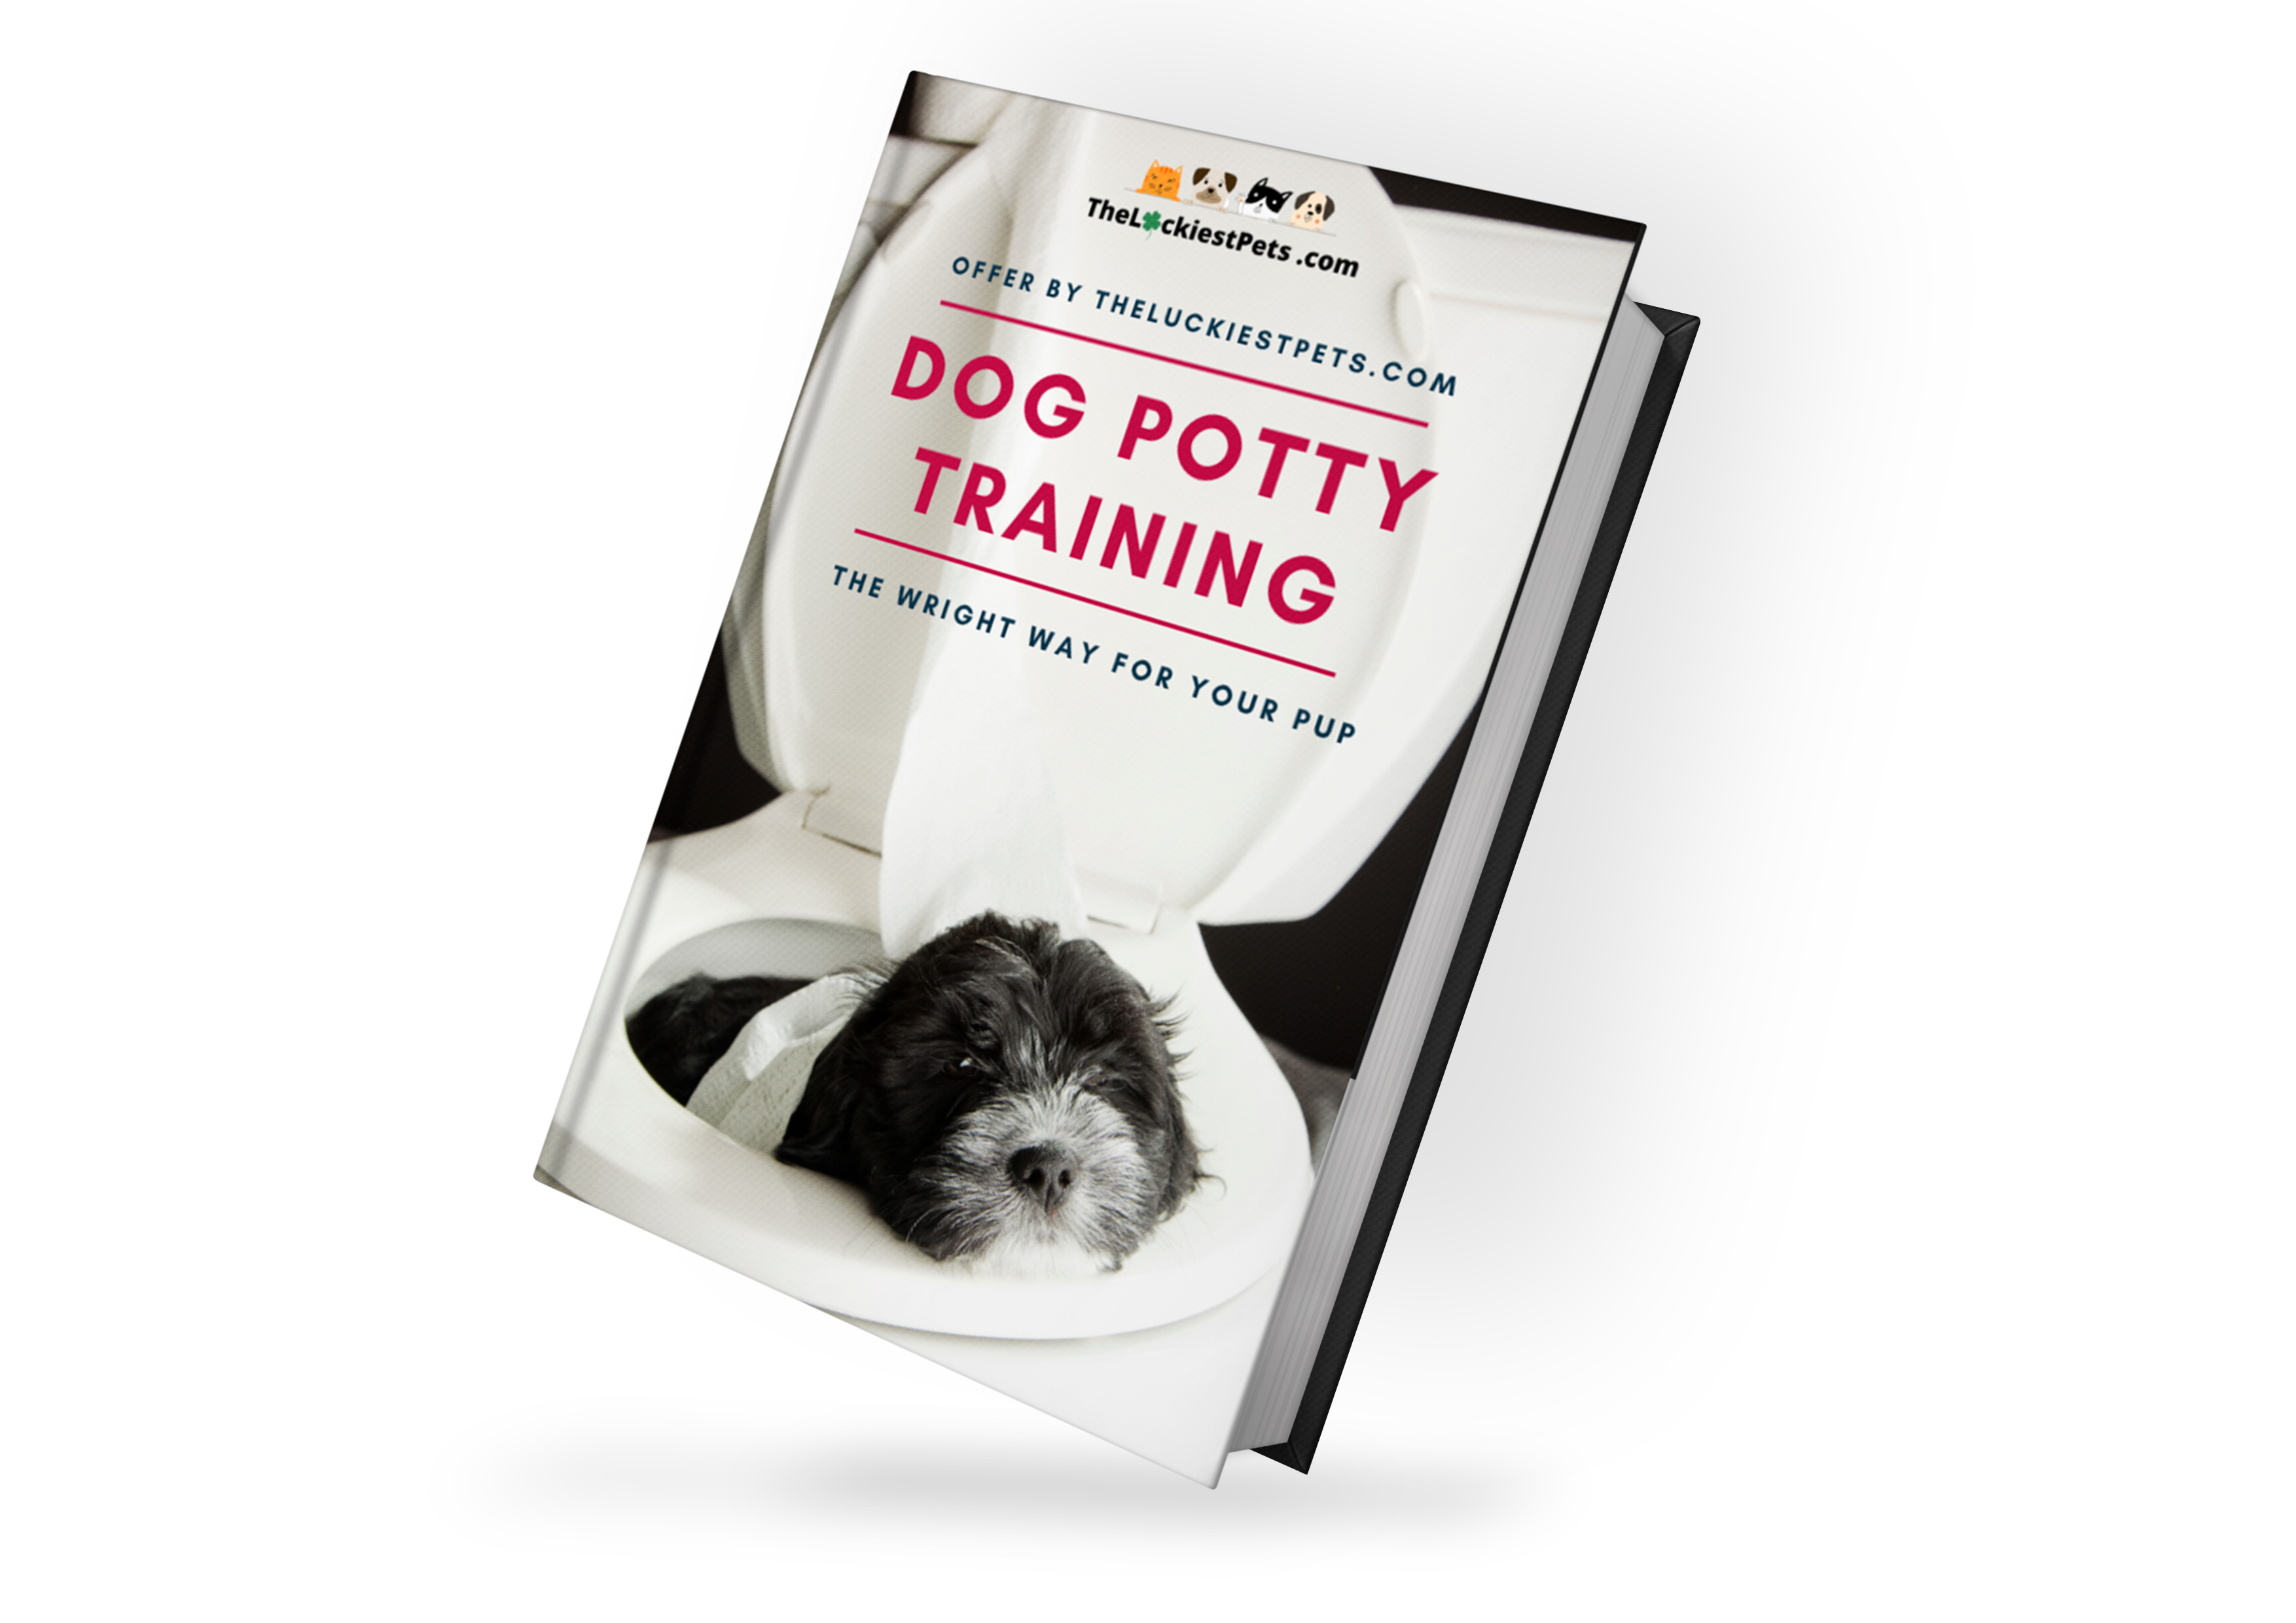 Dog potty training